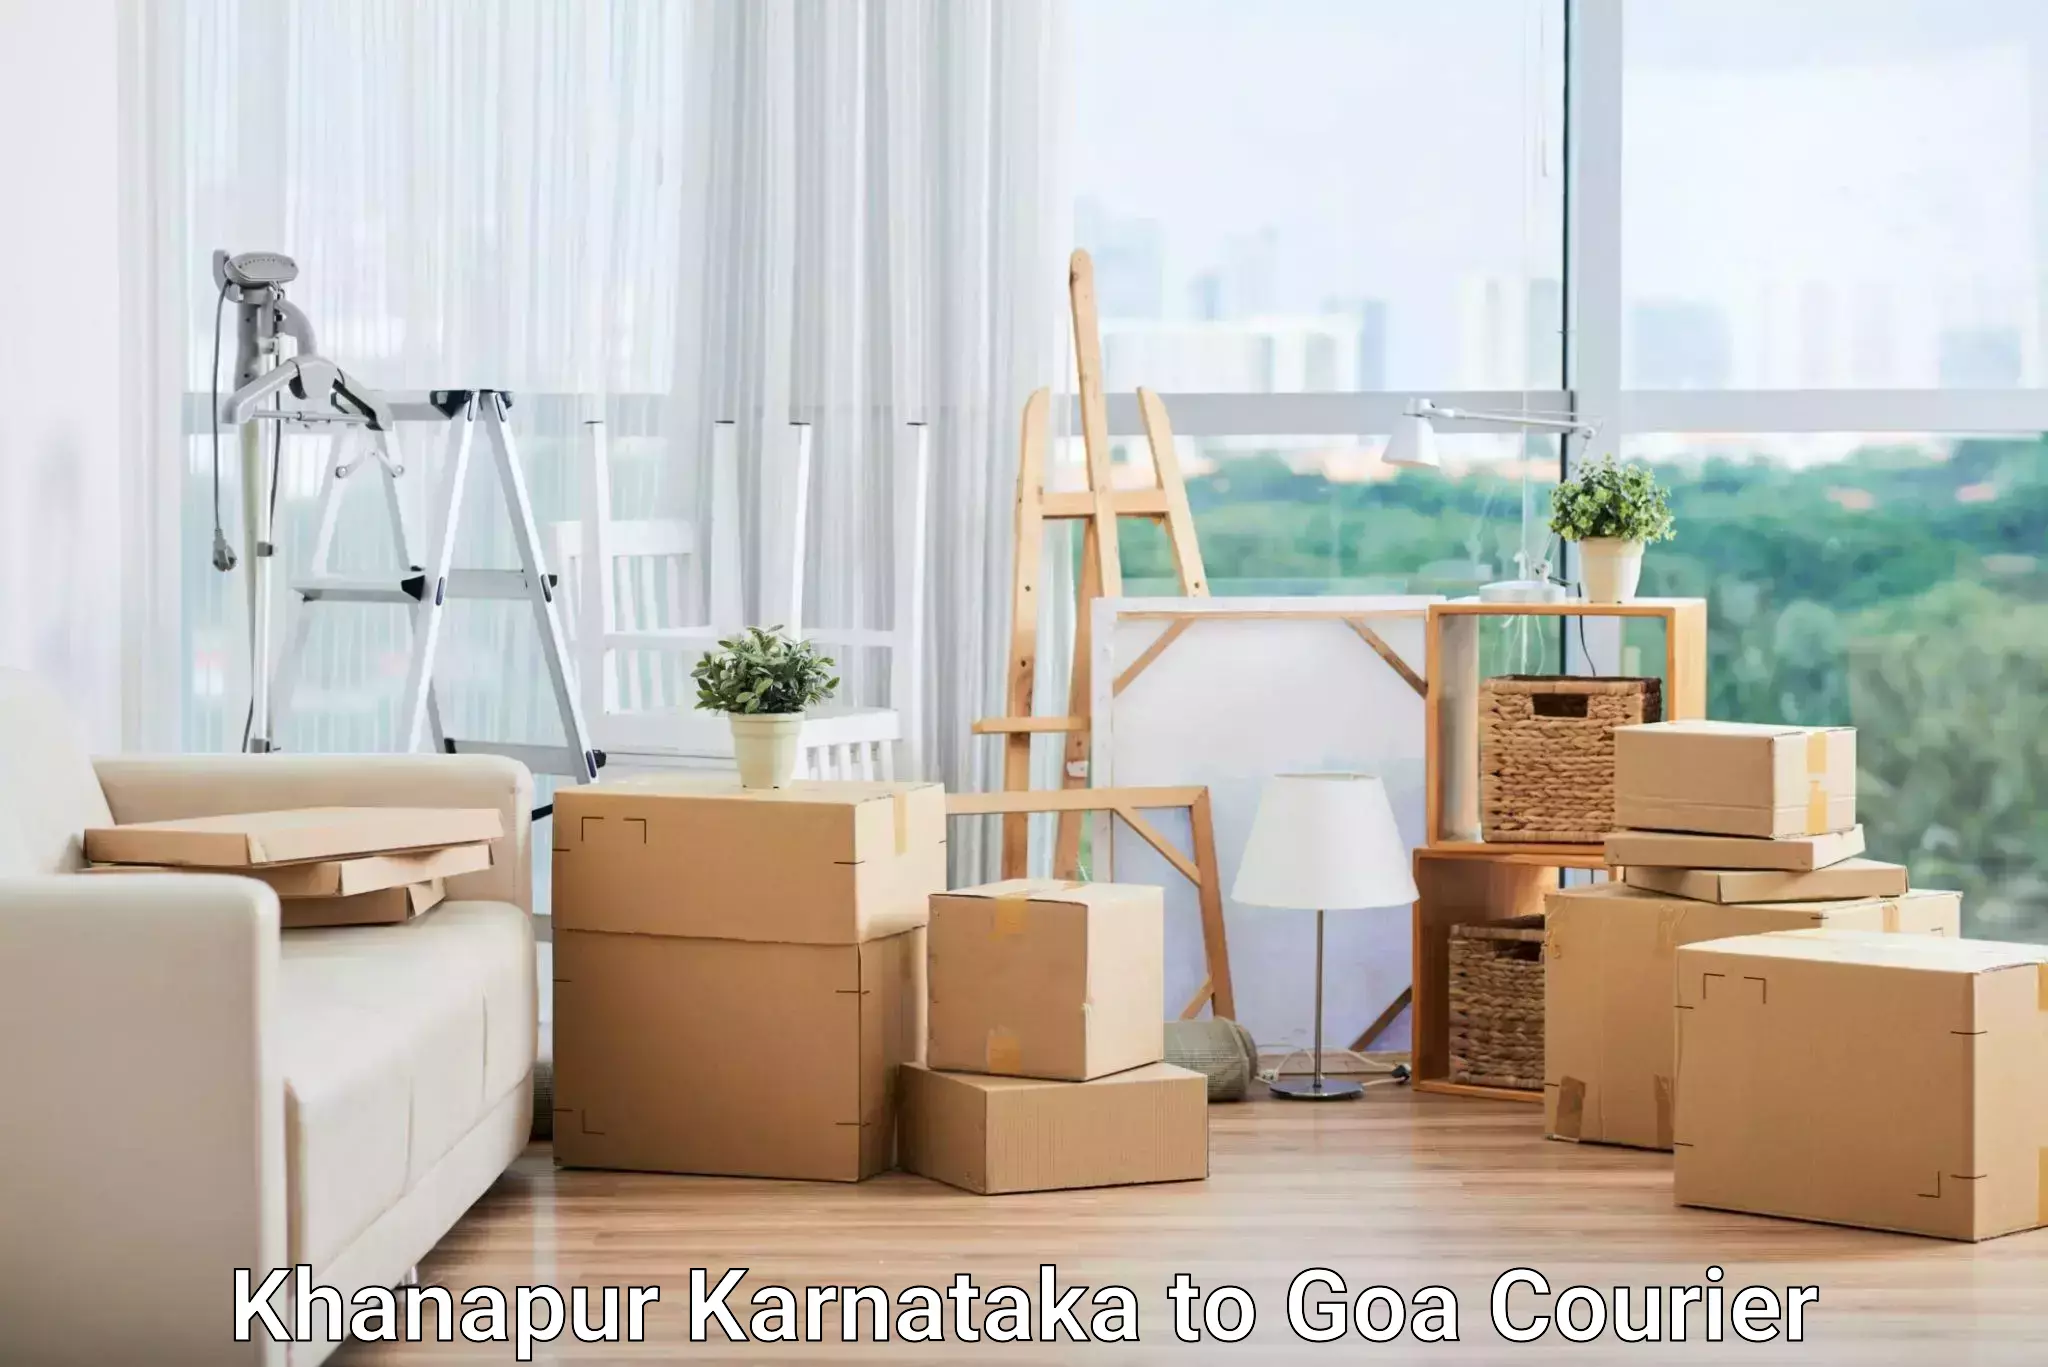 Supply chain efficiency Khanapur Karnataka to Ponda